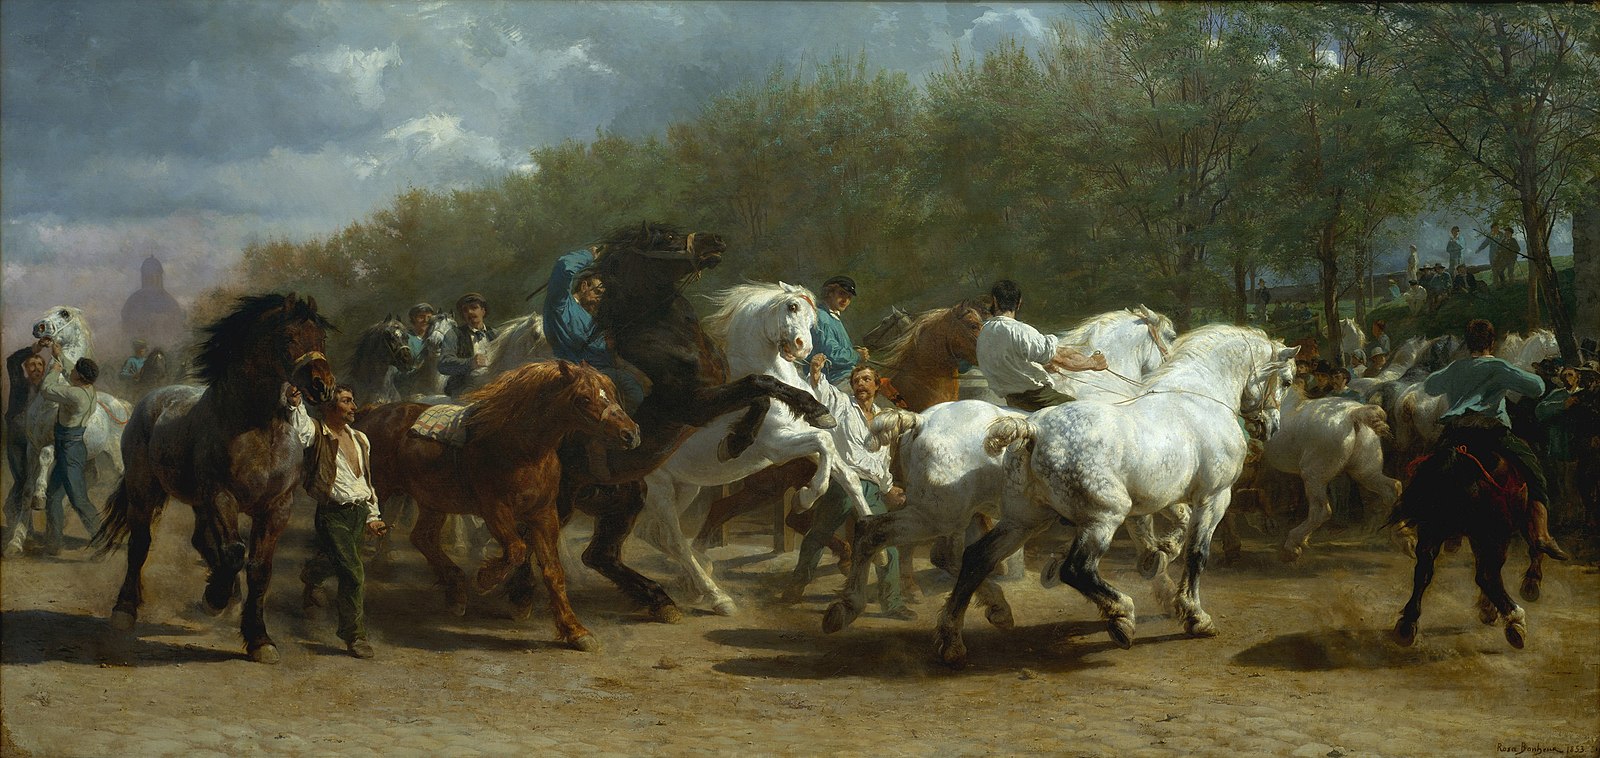 Una feria de caballos con varios caballos y hombres afuera